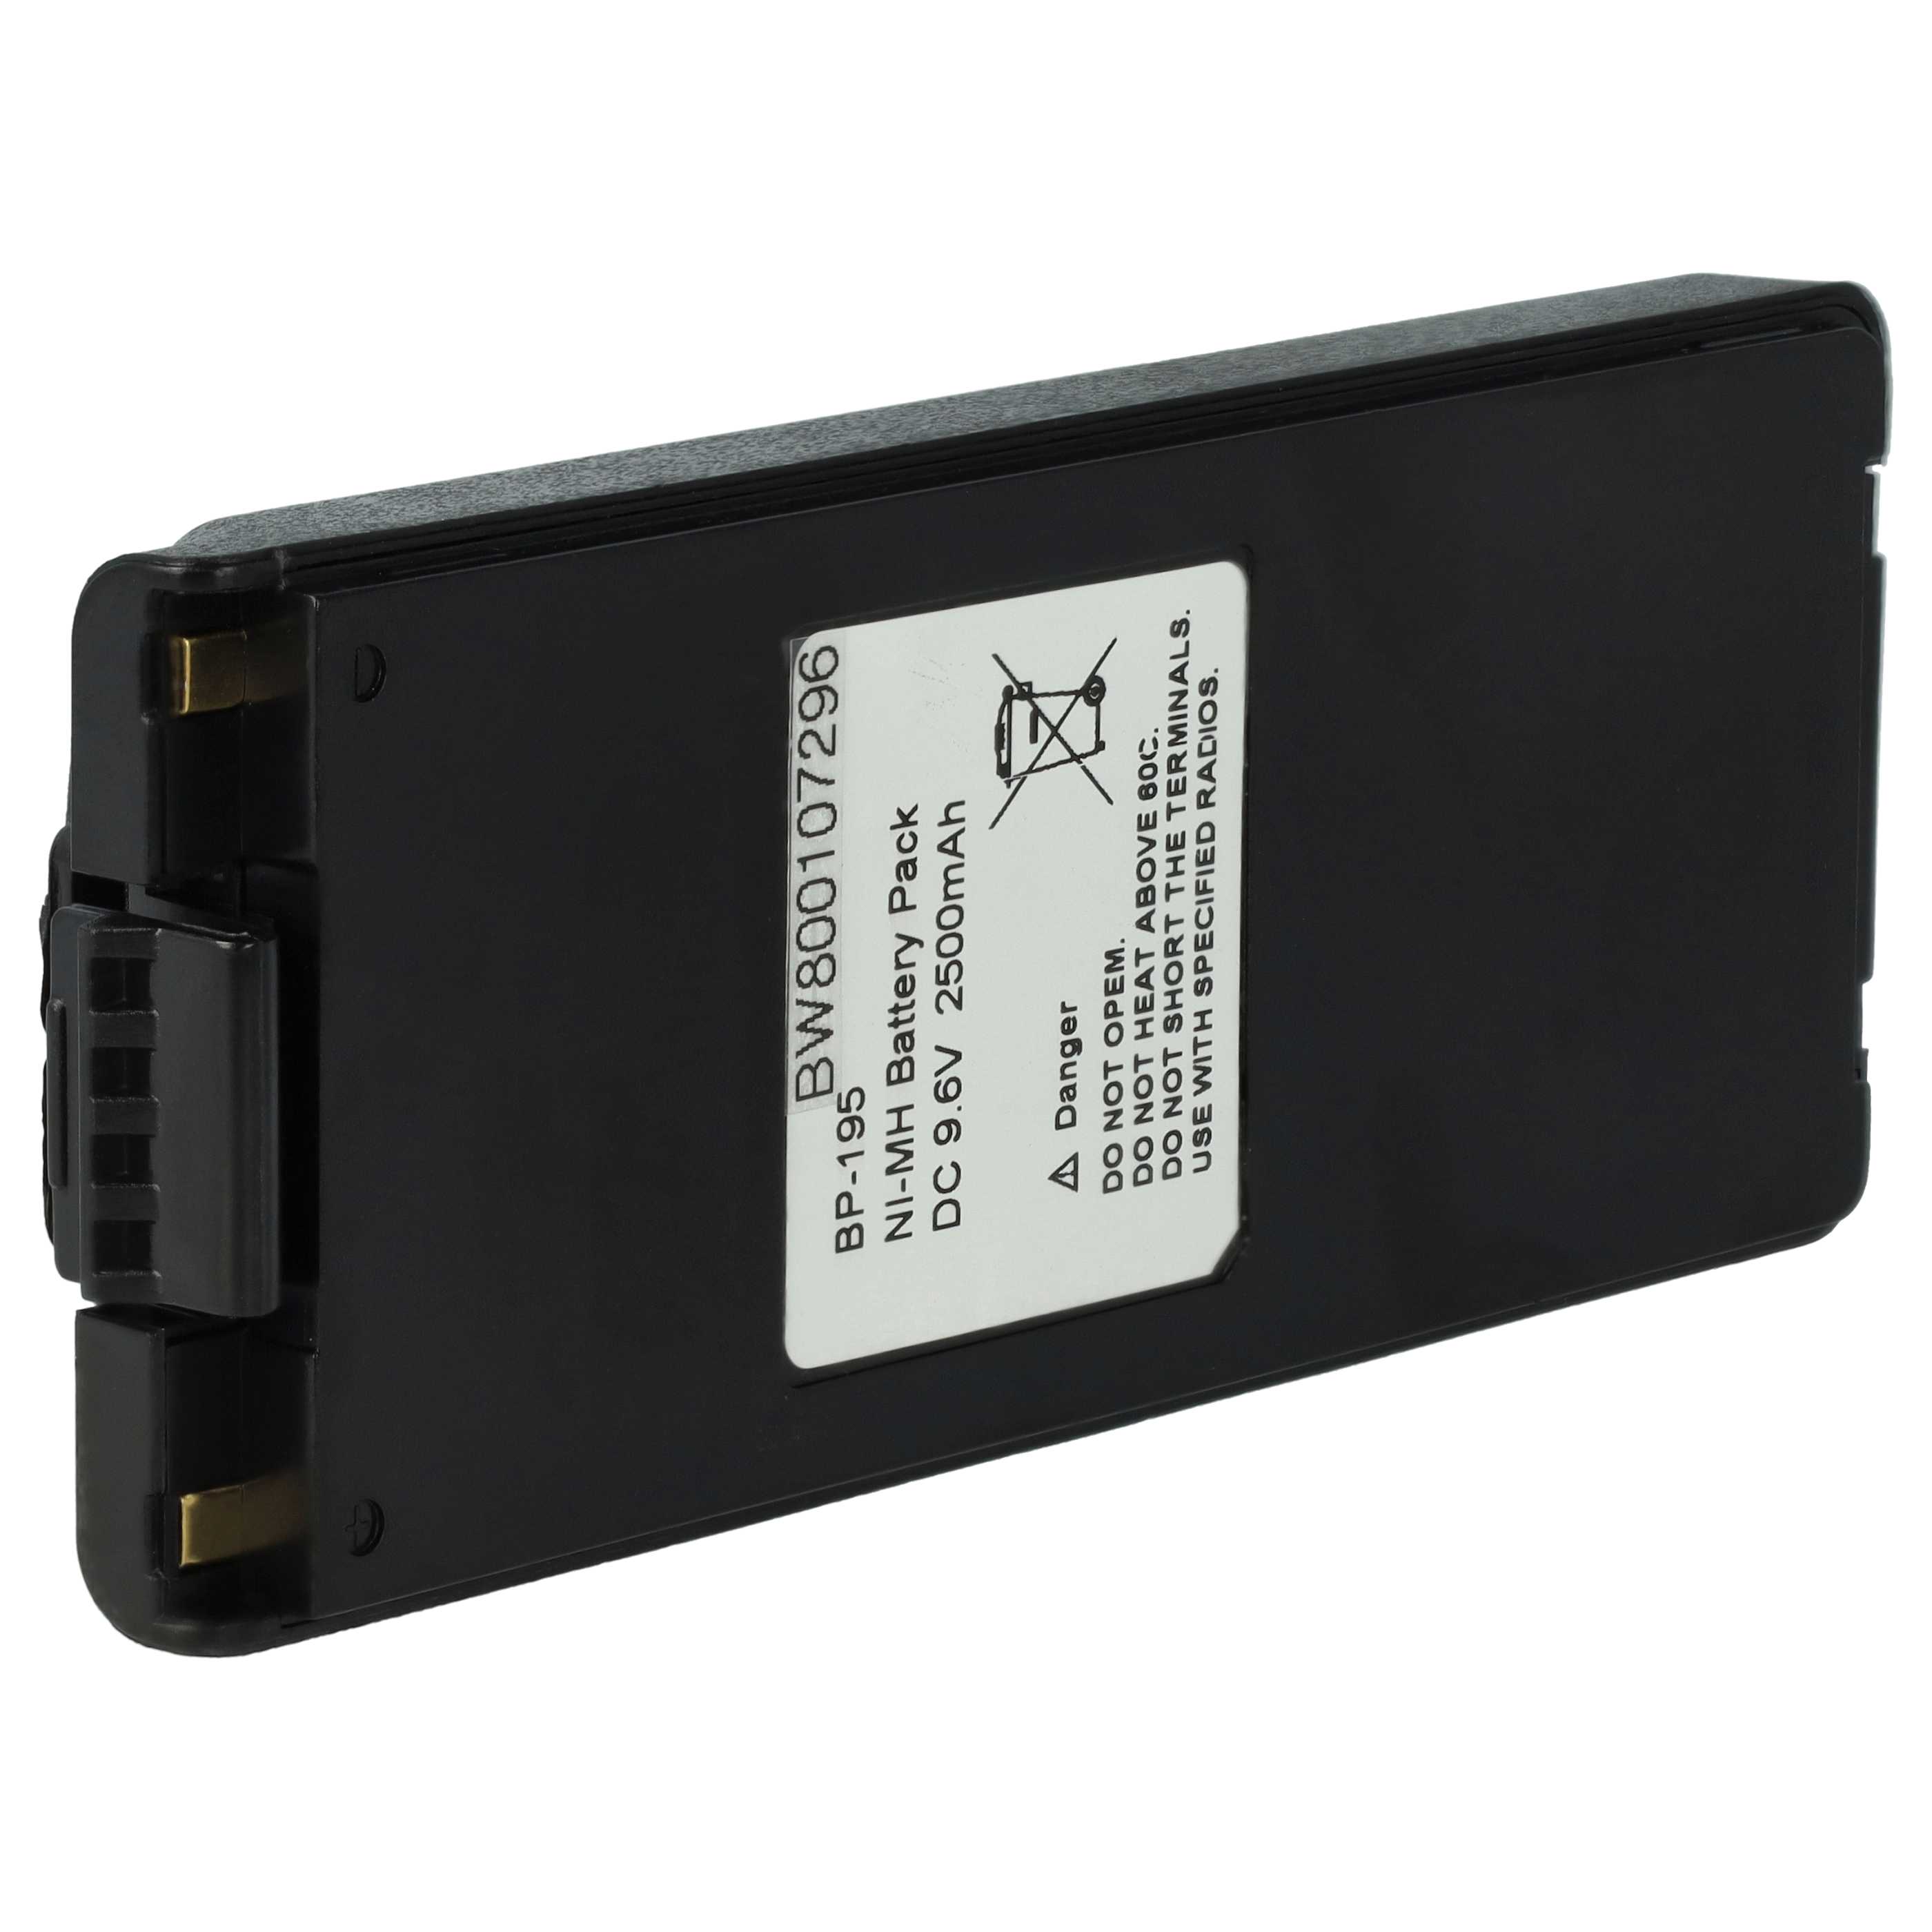 Radio Battery Replacement for Icom BP-195, BP-196H, BP-196, BP-196R - 2500mAh 9.6V NiMH + Belt Clip